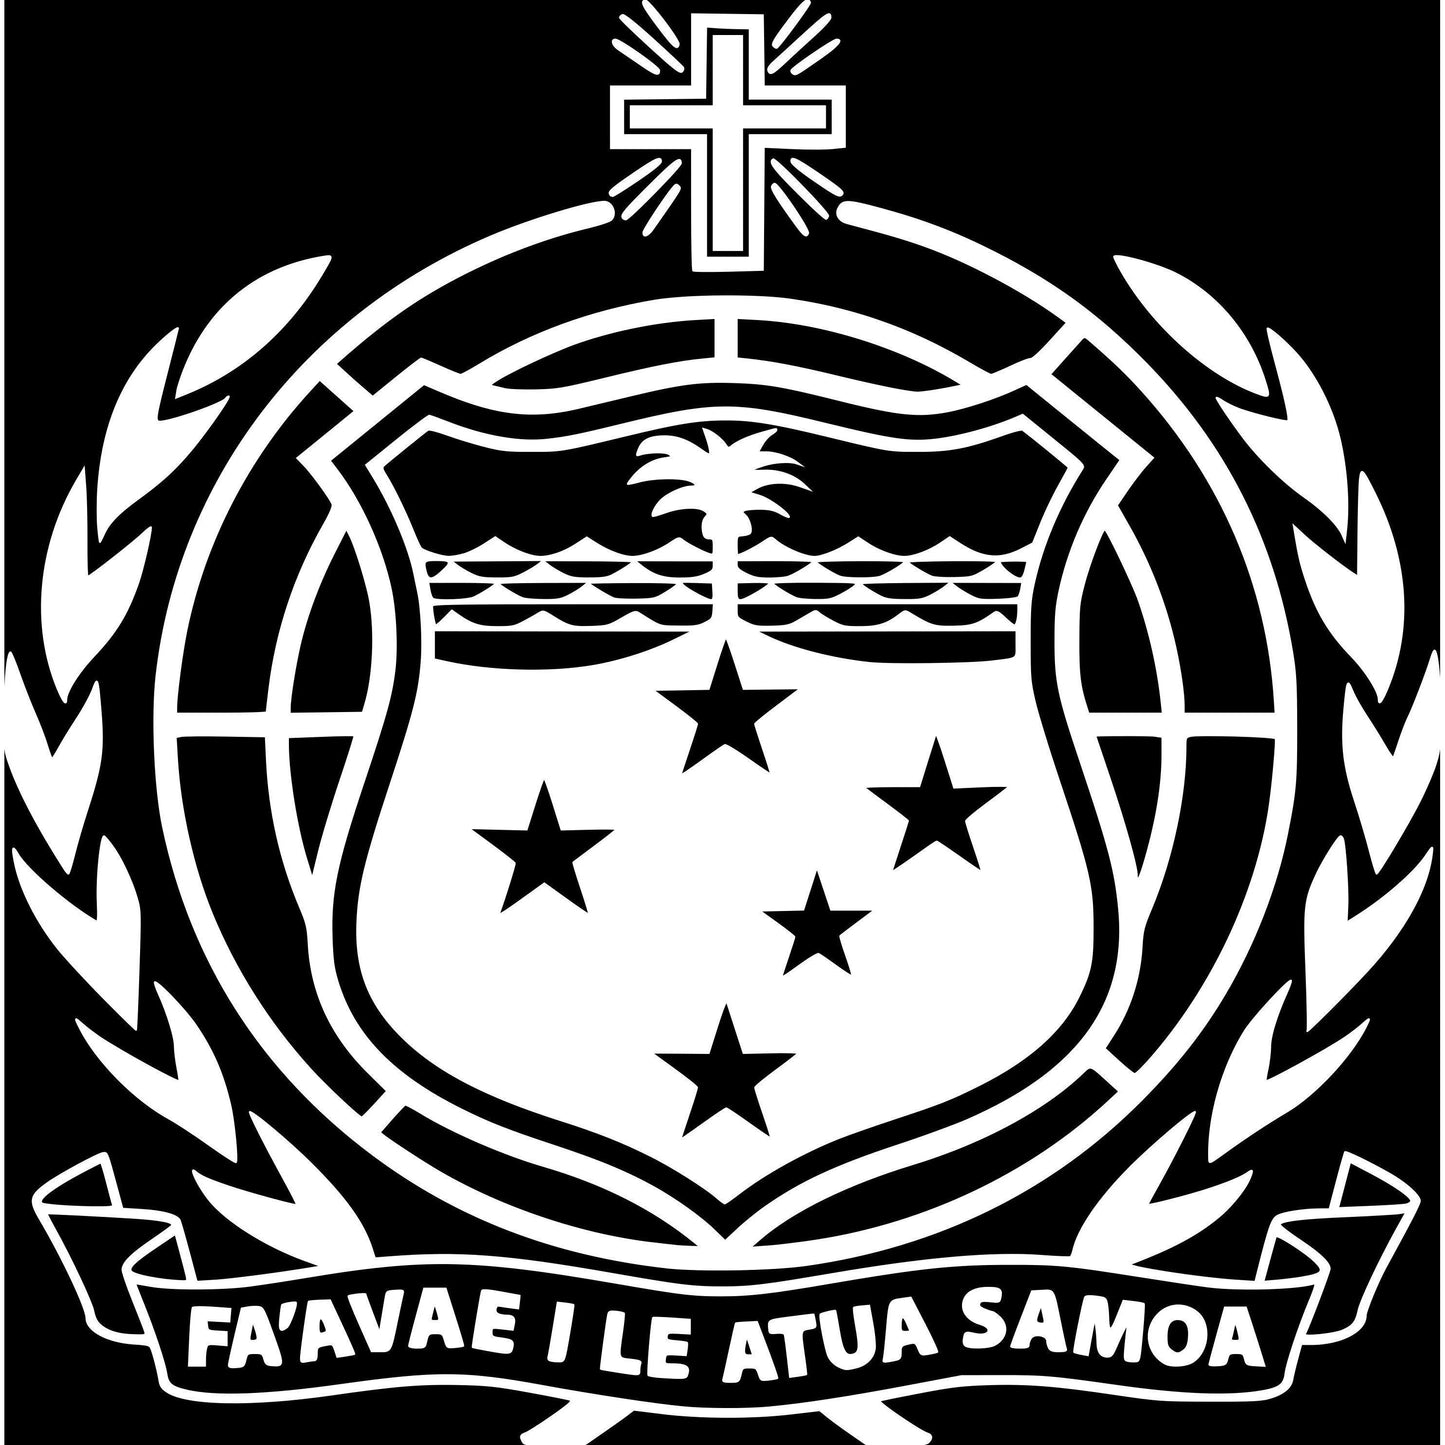 Samoan Shield Sticker Decal - Bi Sign Hub